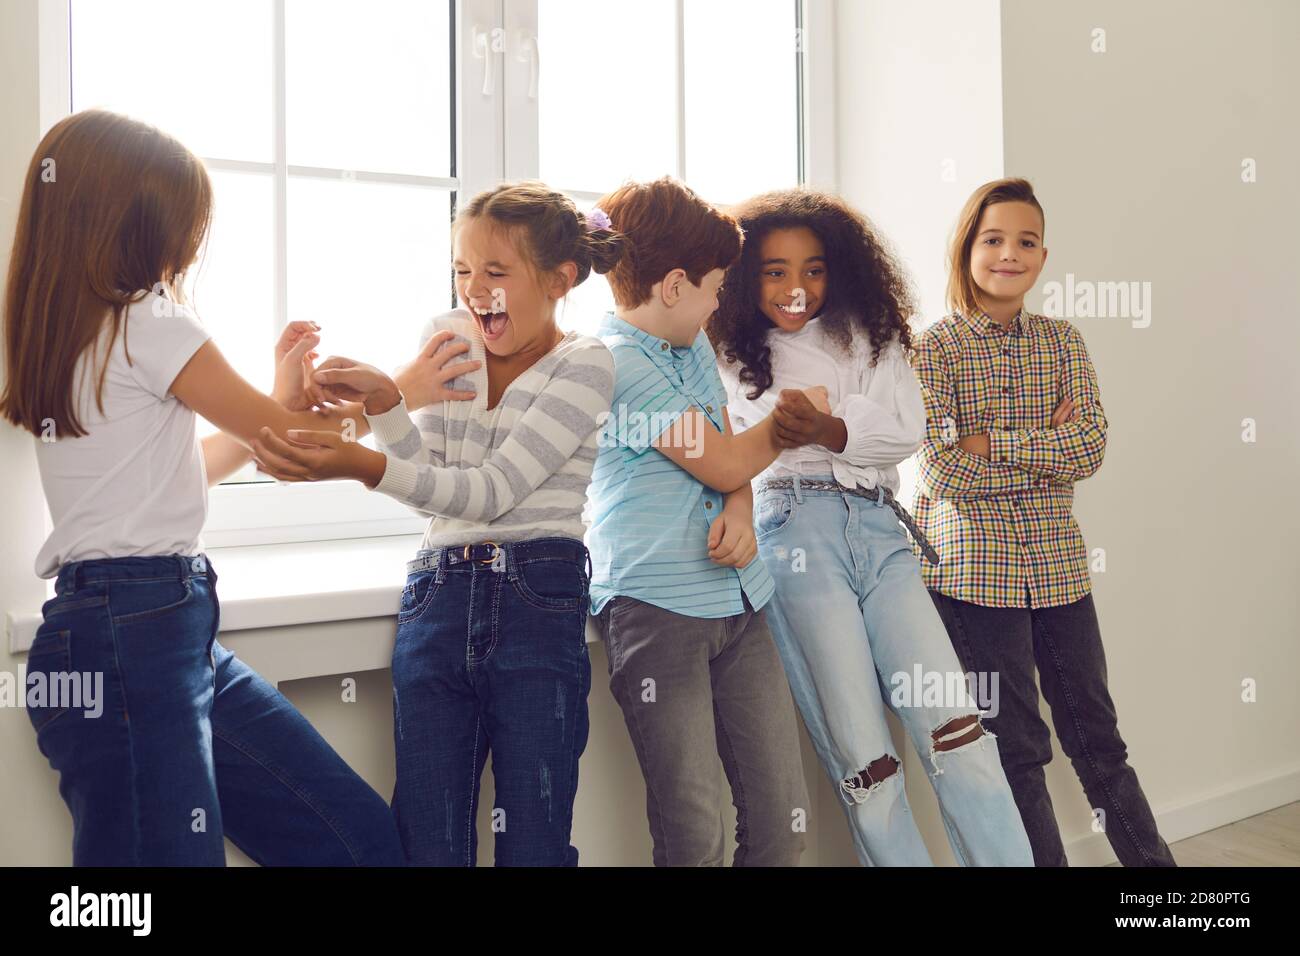 Aktive Gruppe von multiethnischen Kindern haben Spaß zusammen und kitzeln sich gegenseitig stehen am Fenster. Stockfoto